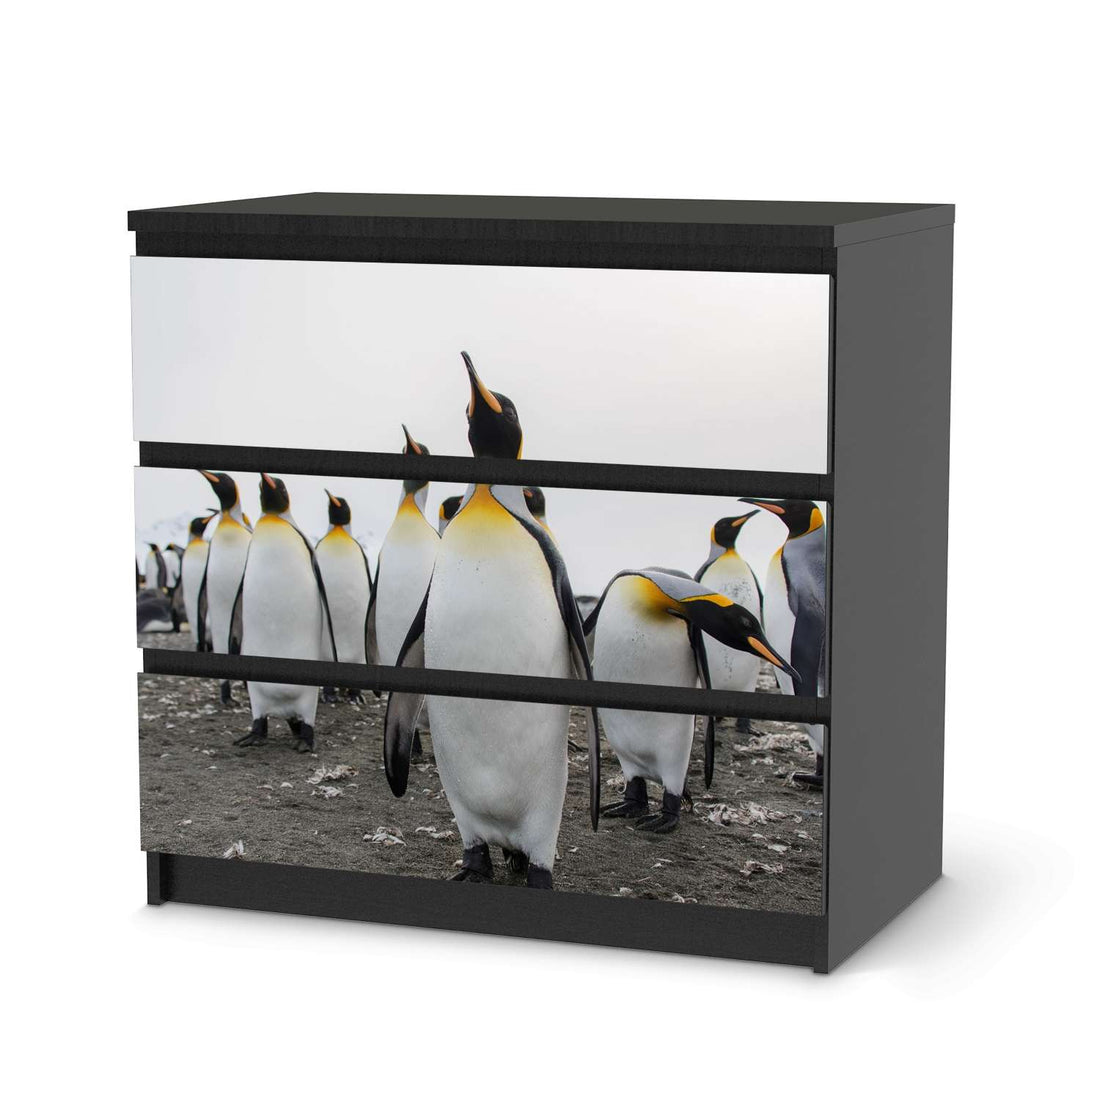 Klebefolie für Möbel Penguin Family - IKEA Malm Kommode 3 Schubladen - schwarz